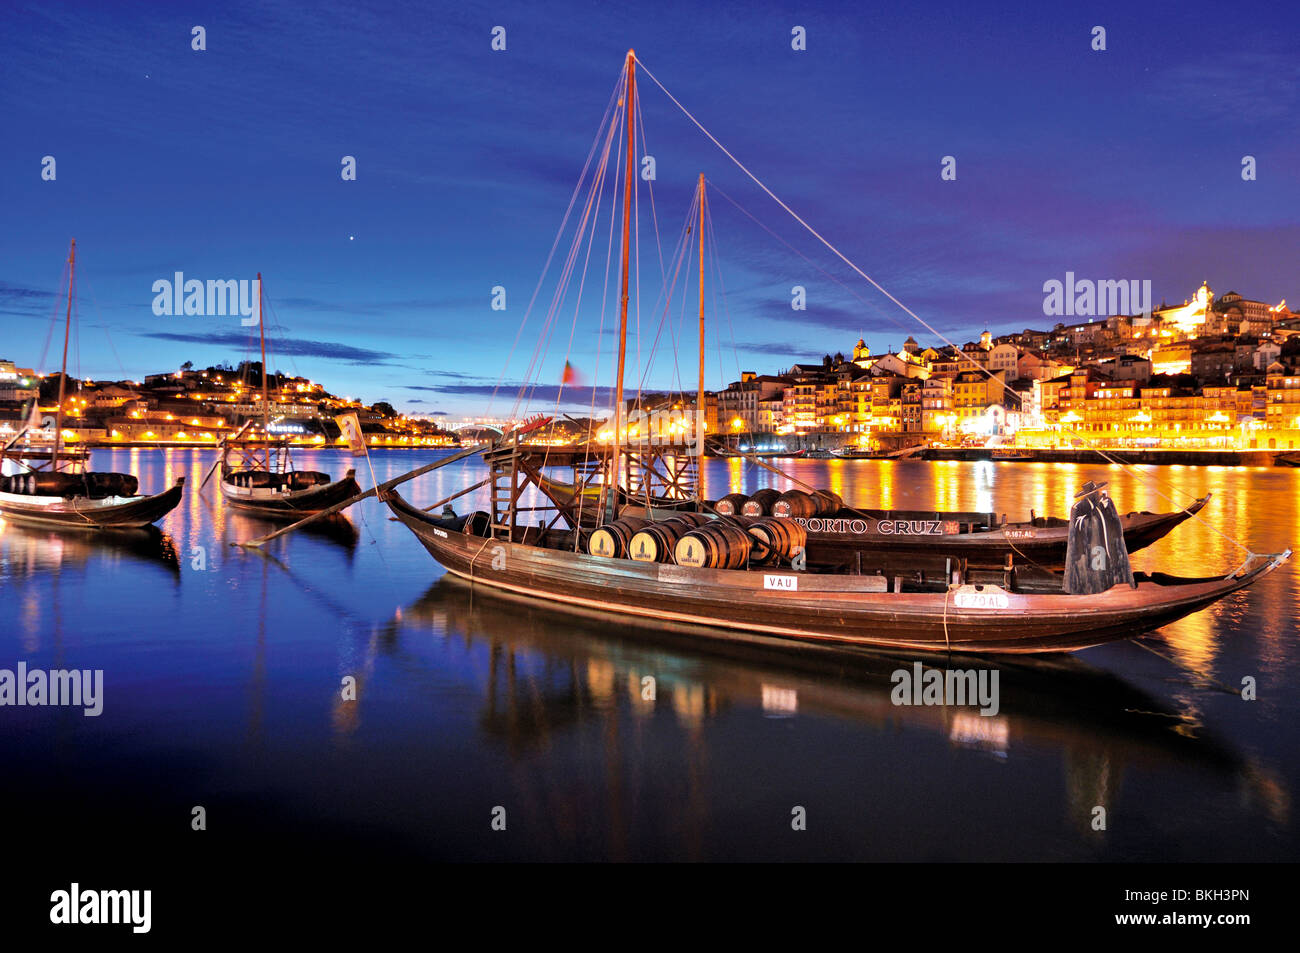 Portugal, Porto : vue de la nuit du vin de navires à Vila Nova de Gaia au fleuve Douro Banque D'Images